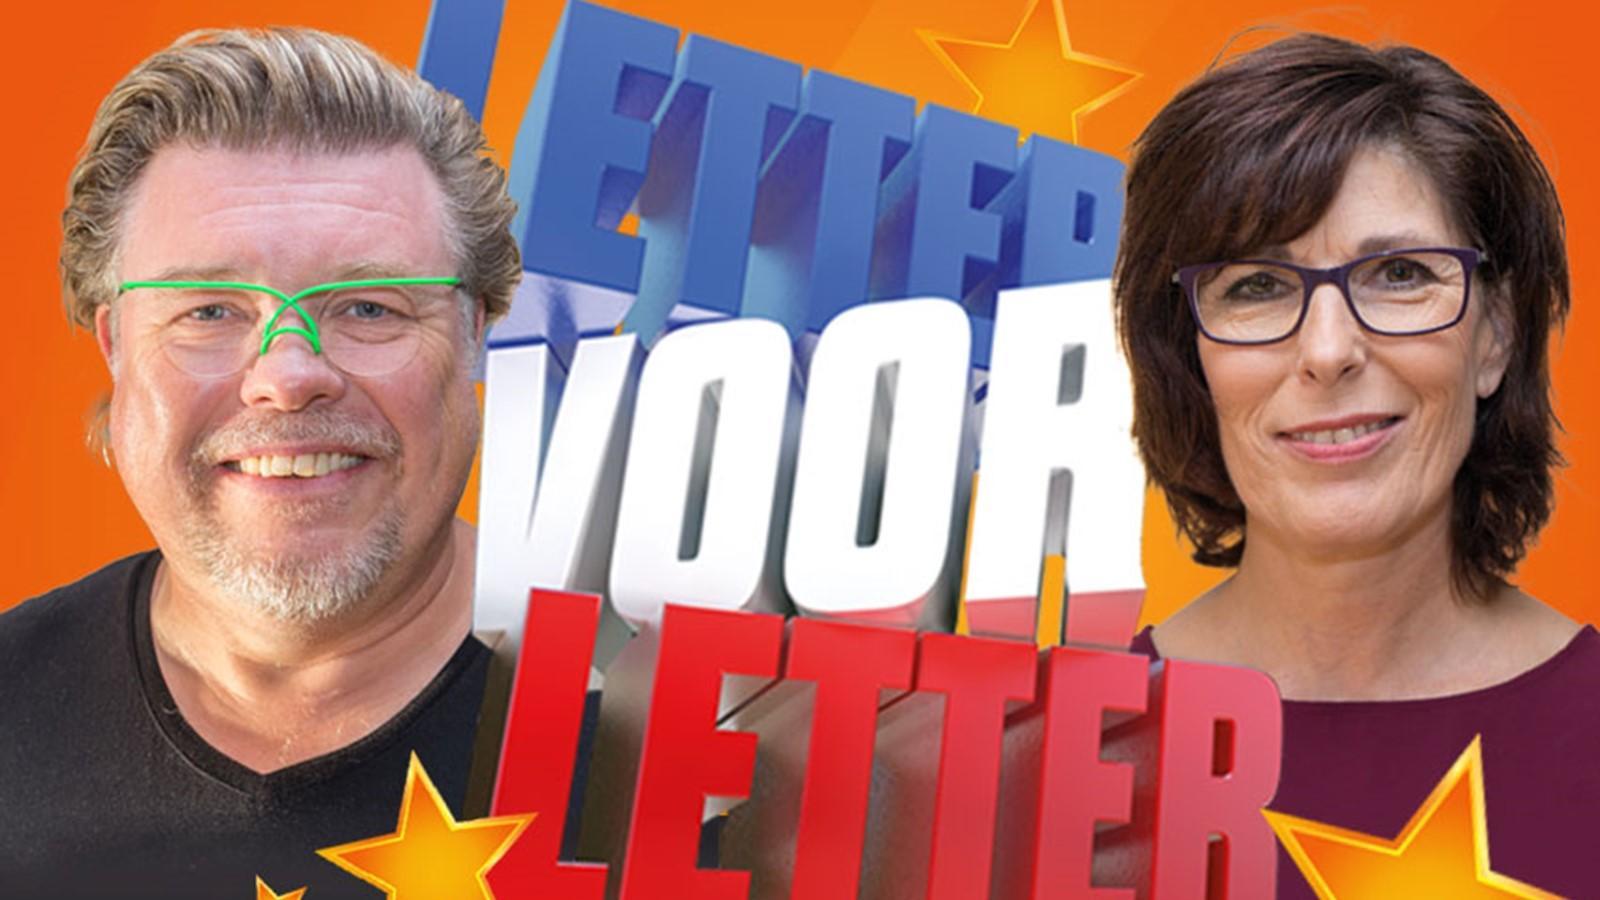 Gratis naar concert Letter voor Letter in DNK